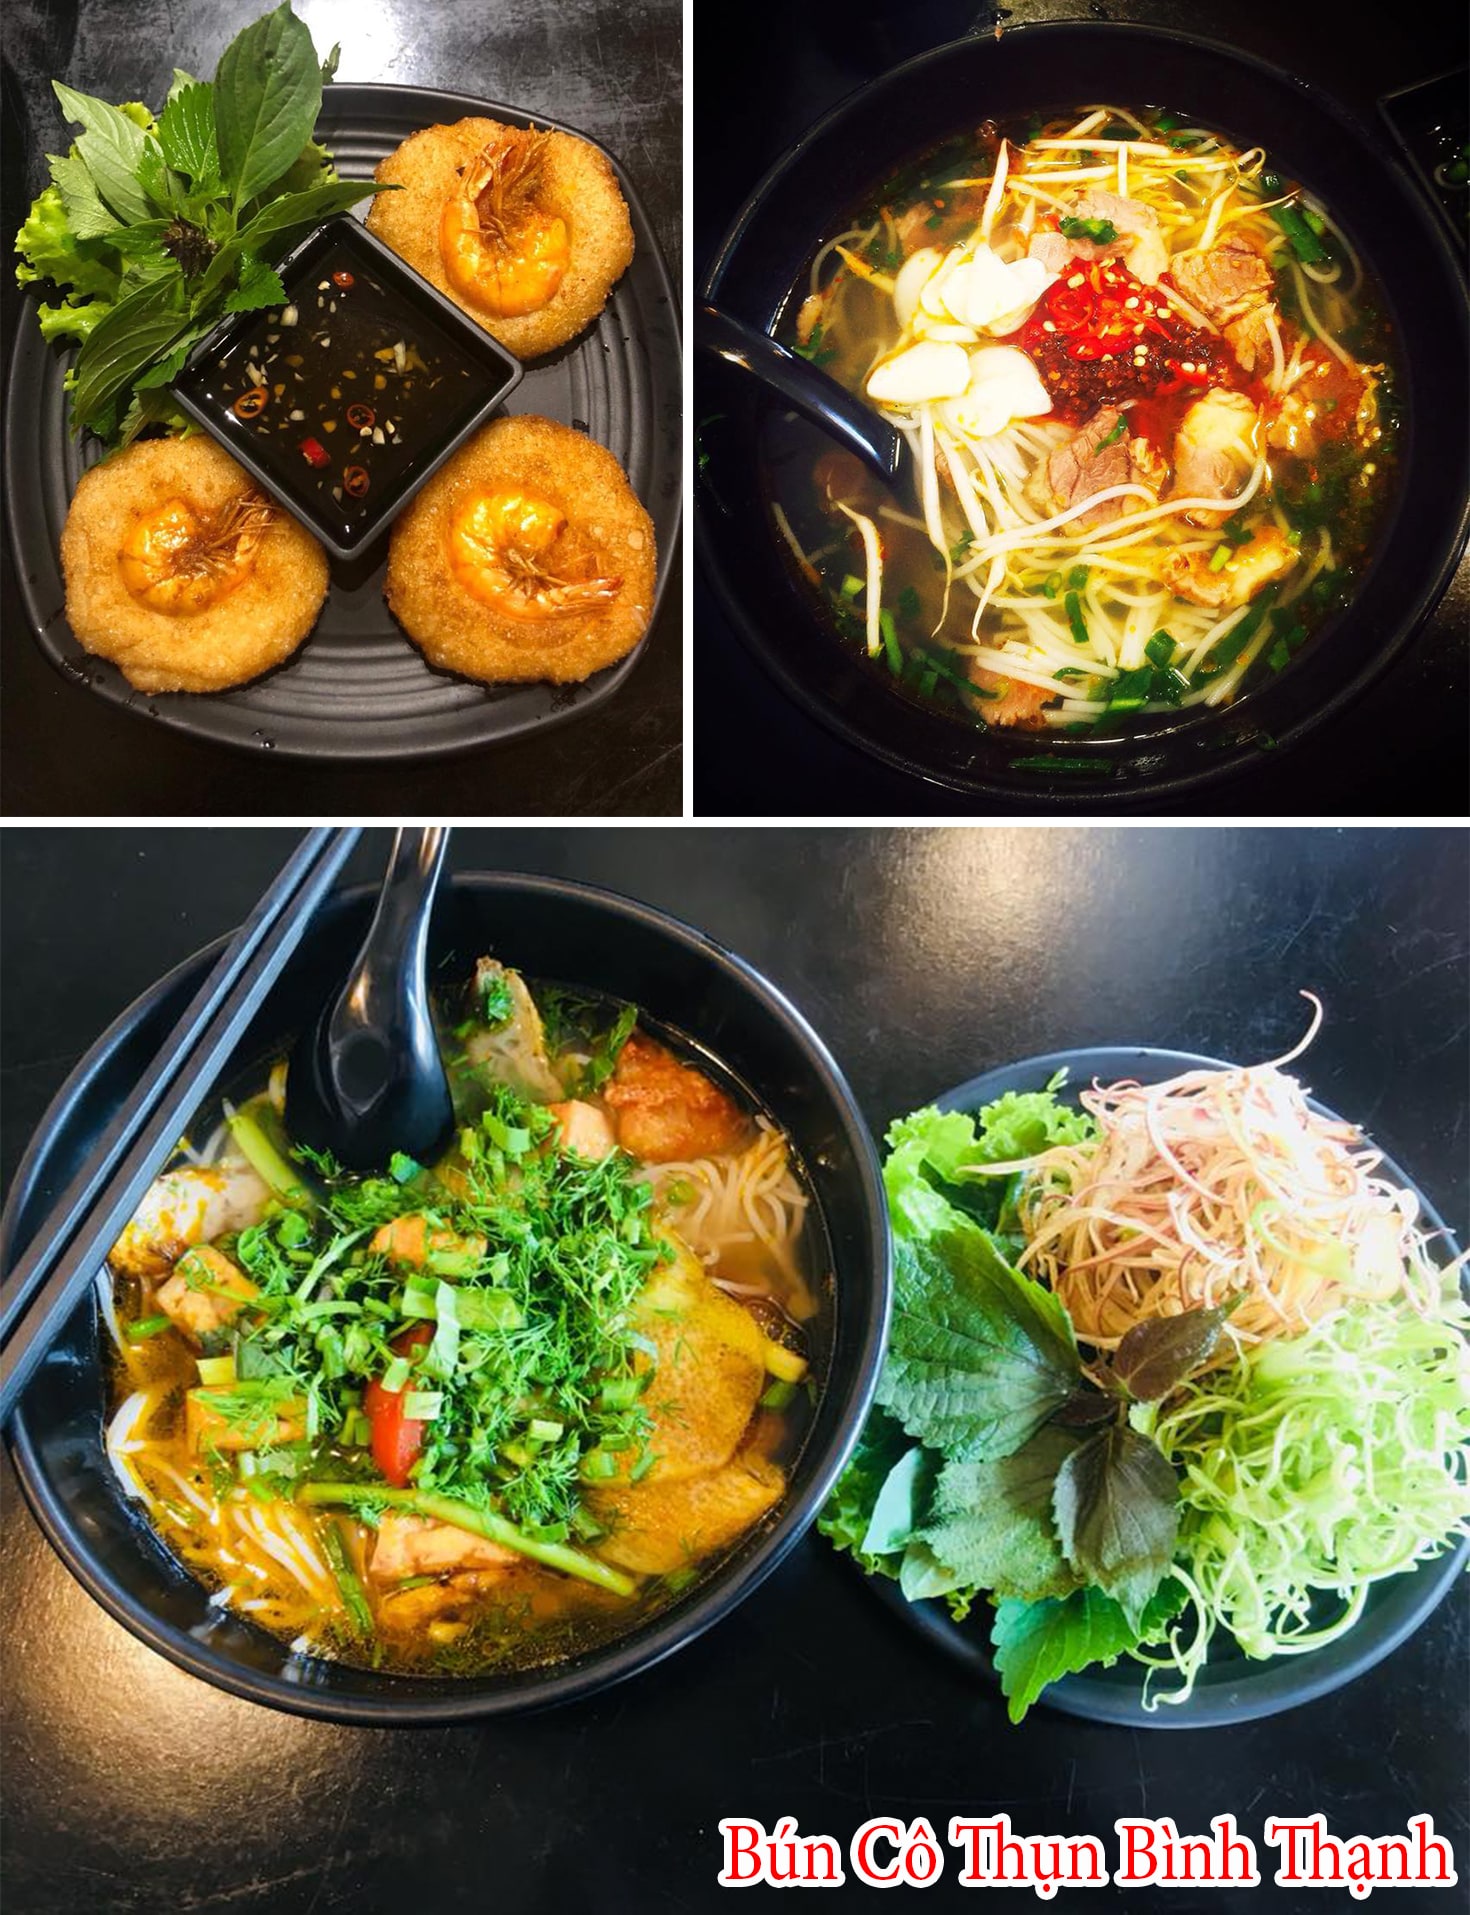 Hình ảnh thực tế các món ăn tại Quán Cô Thụn Bình Thạnh